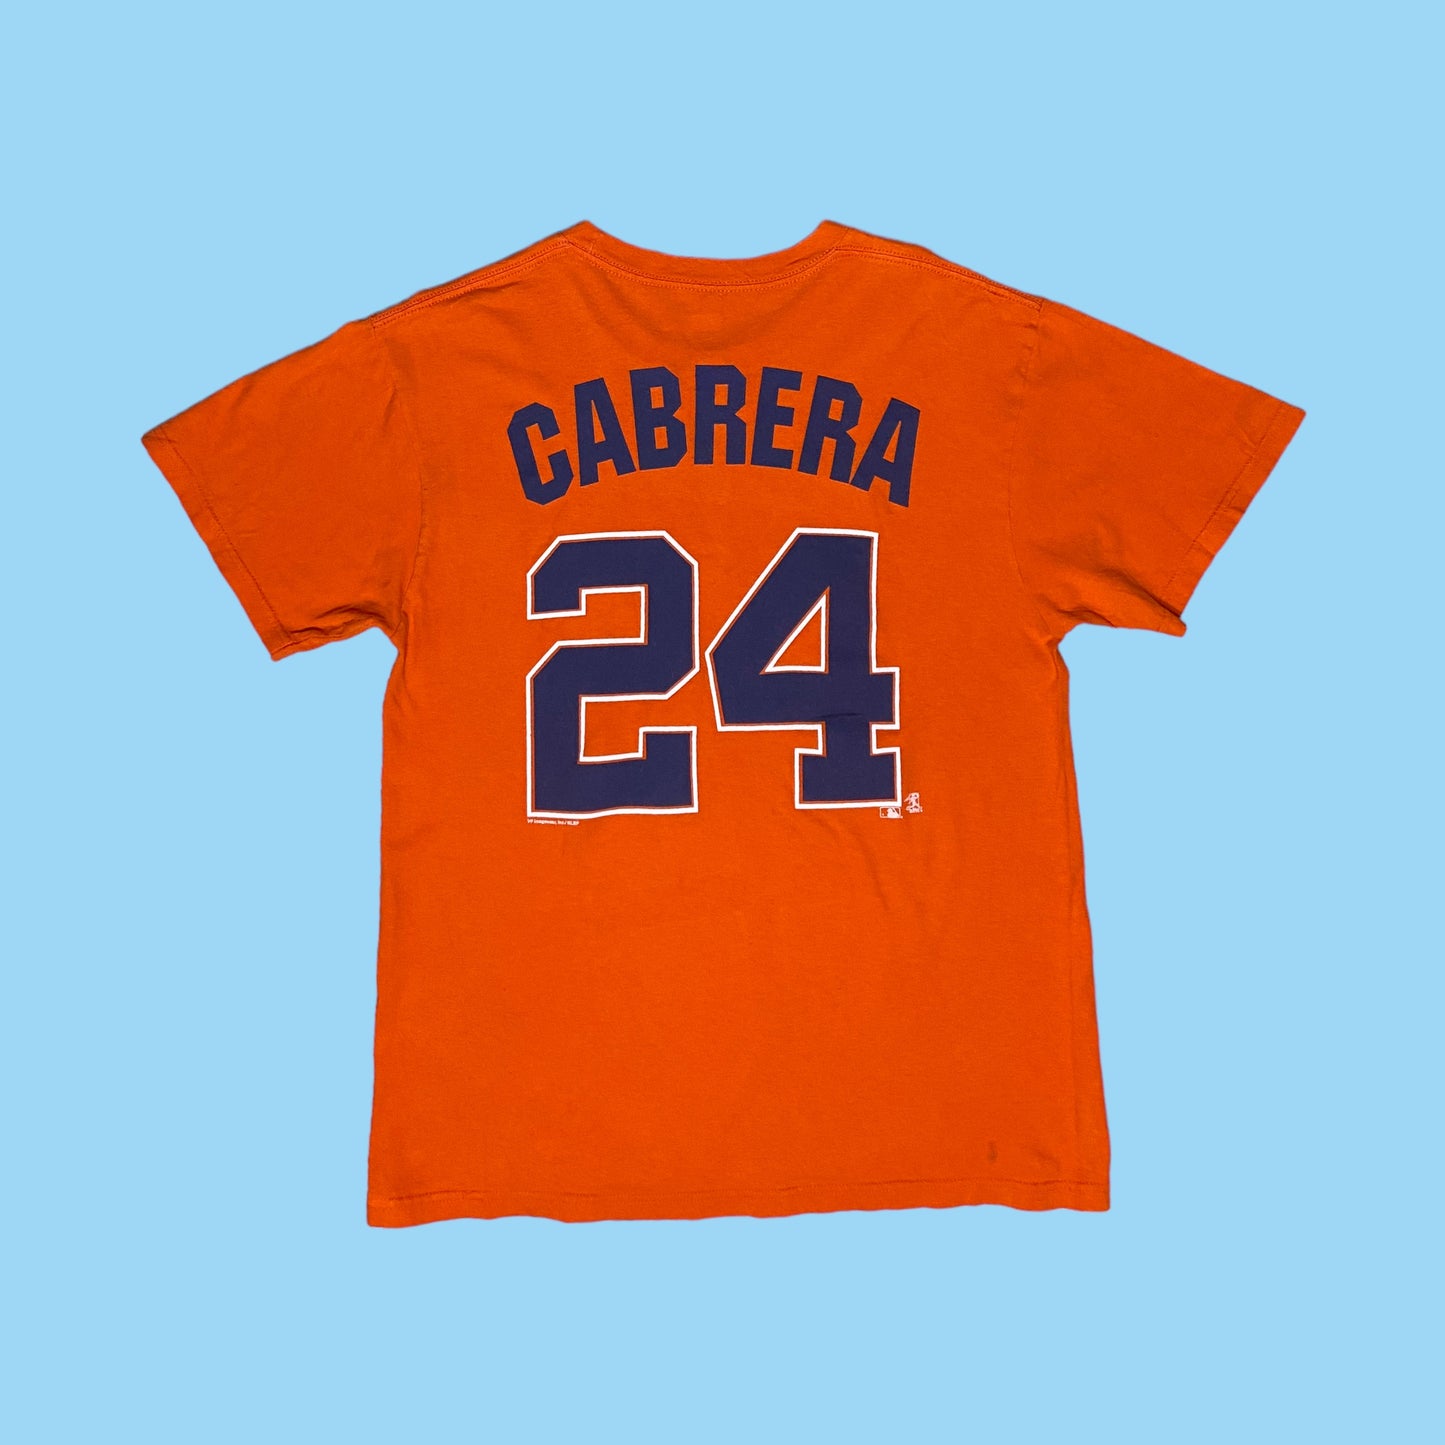 Tigers Cabrera t-shirt - M